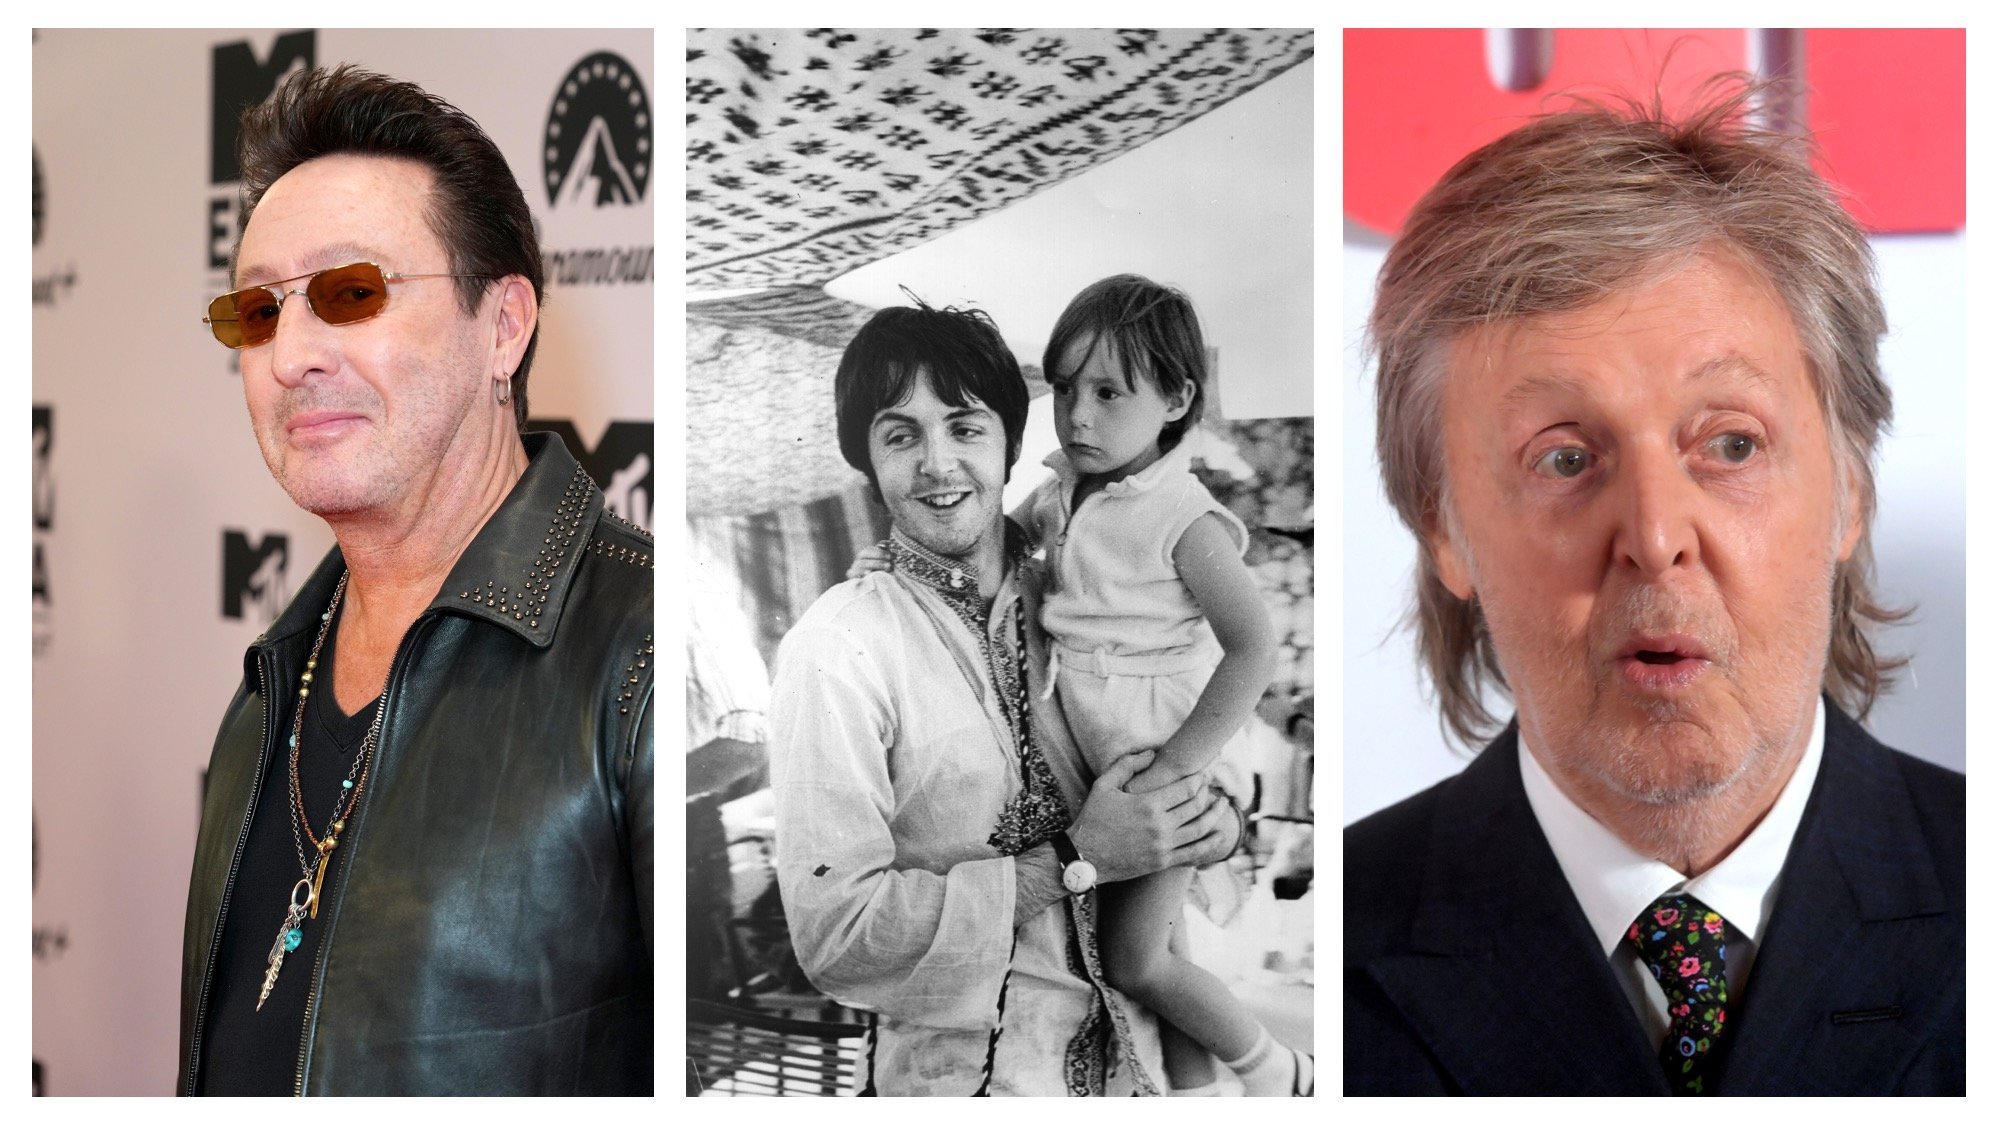 (L) Julian Lennon at the MTV Europe Music Awards 2022 (C) Paul McCartney holds Julian Lennon as a child, c. 1967 (R) Paul McCartney at the UK Premiere of "The Beatles: Get Back" at Cineworld Empire on November 16, 2021.